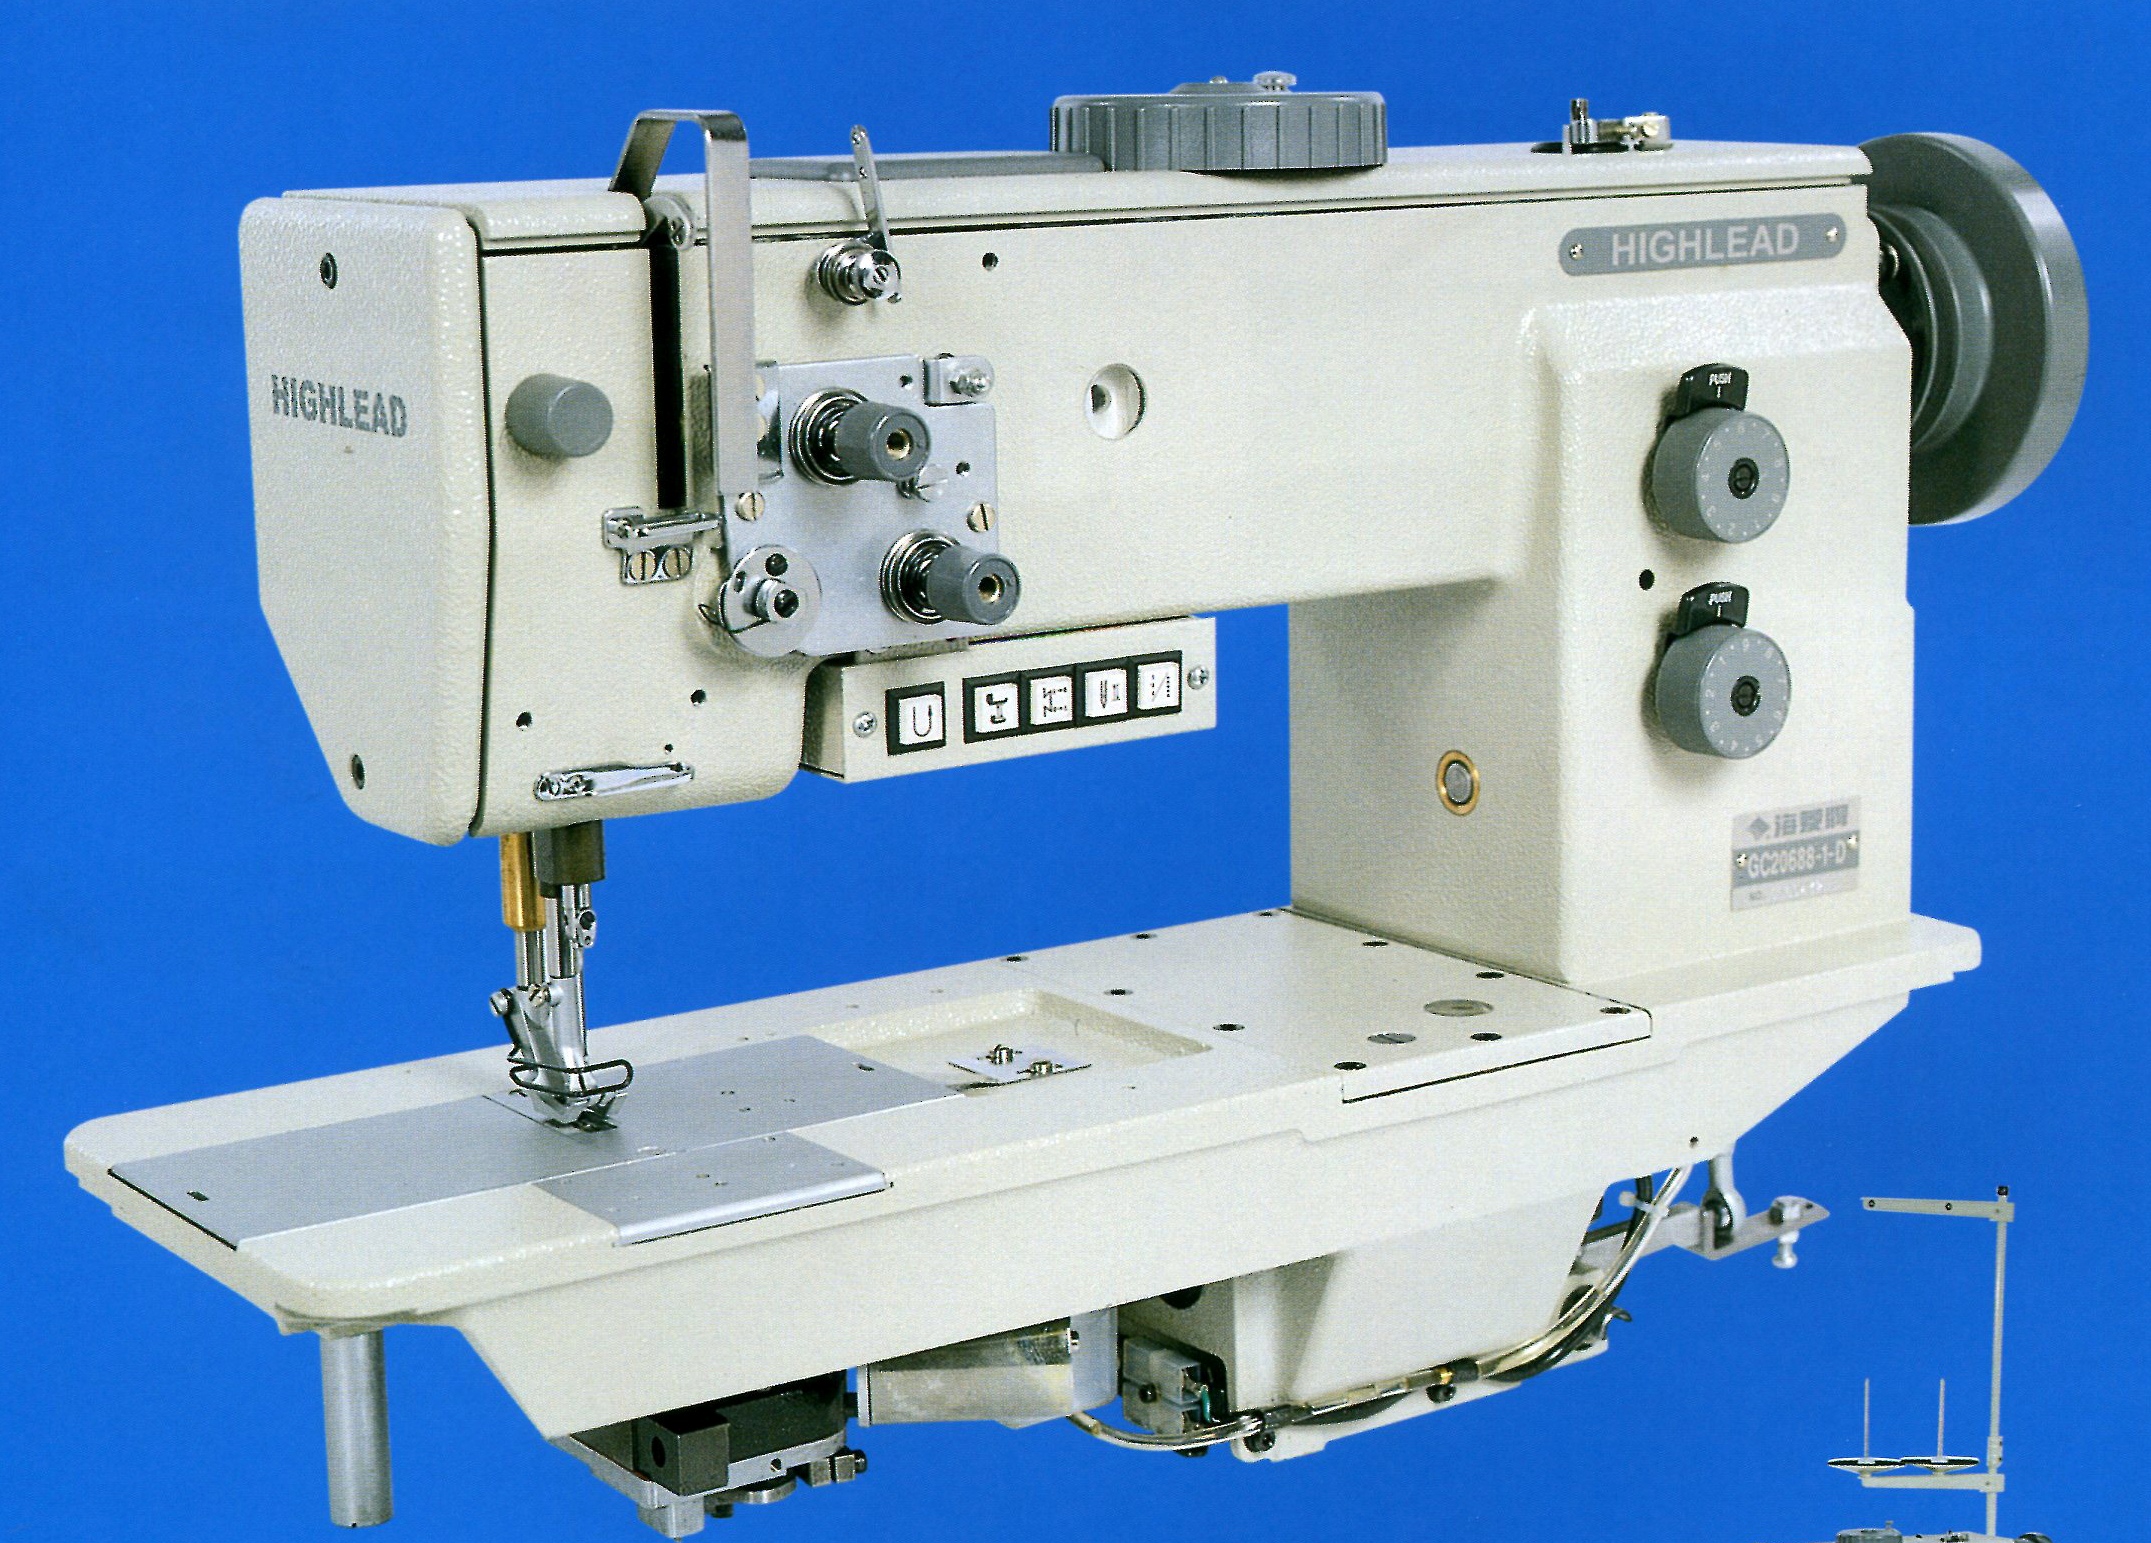 Highlead GC20688 Heavy Duty Feed Lockstitch Sewing Machine